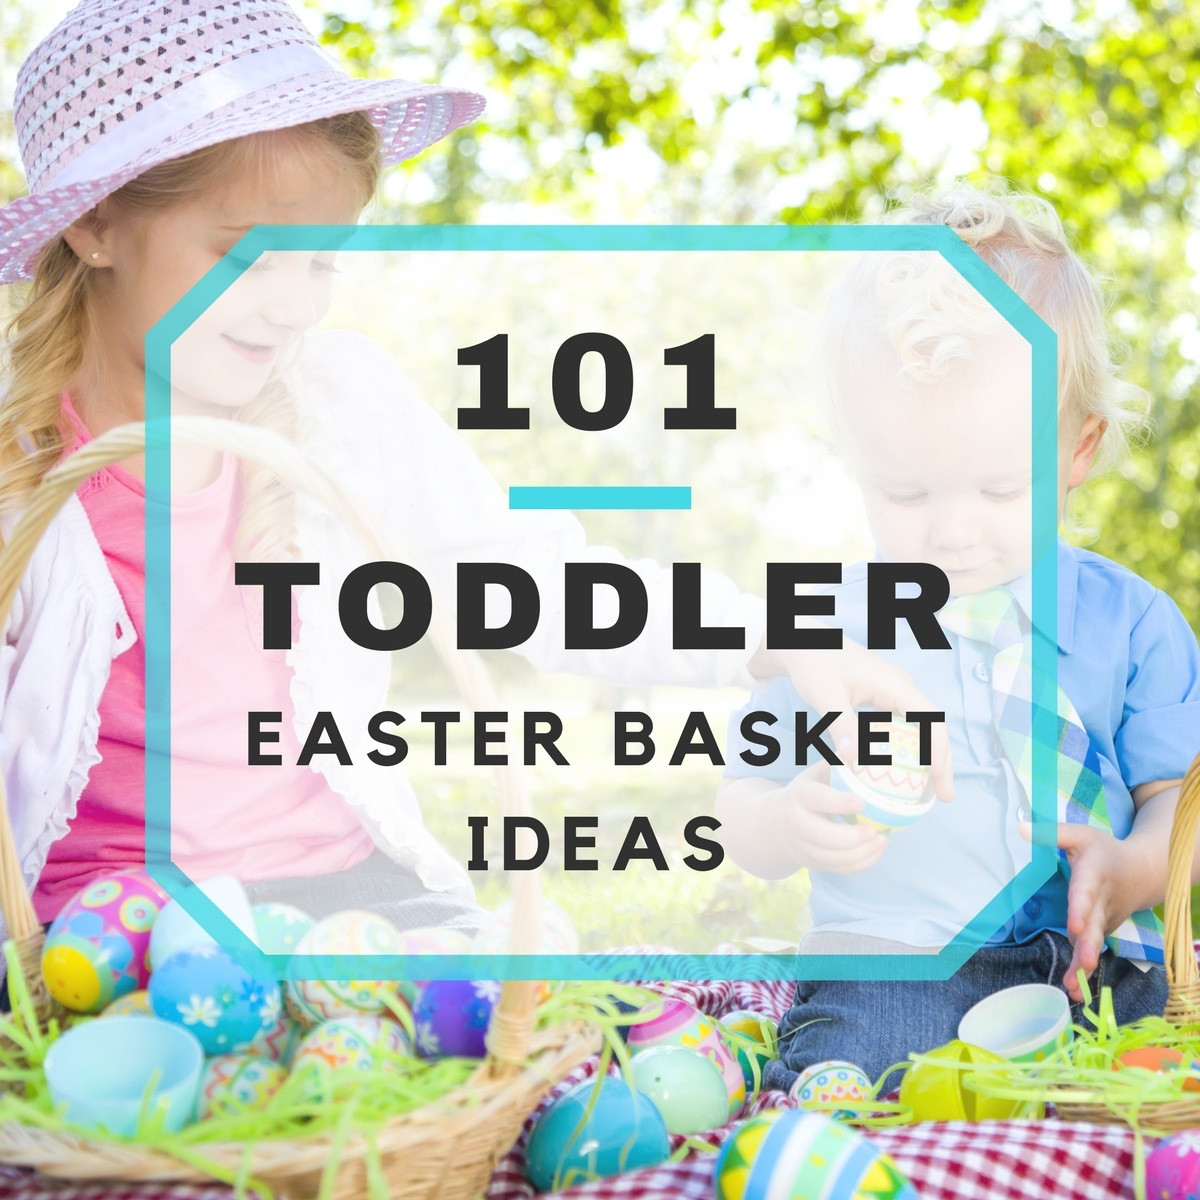 Toddlers Easter Basket Ideas
 101 Toddler Easter Basket Ideas